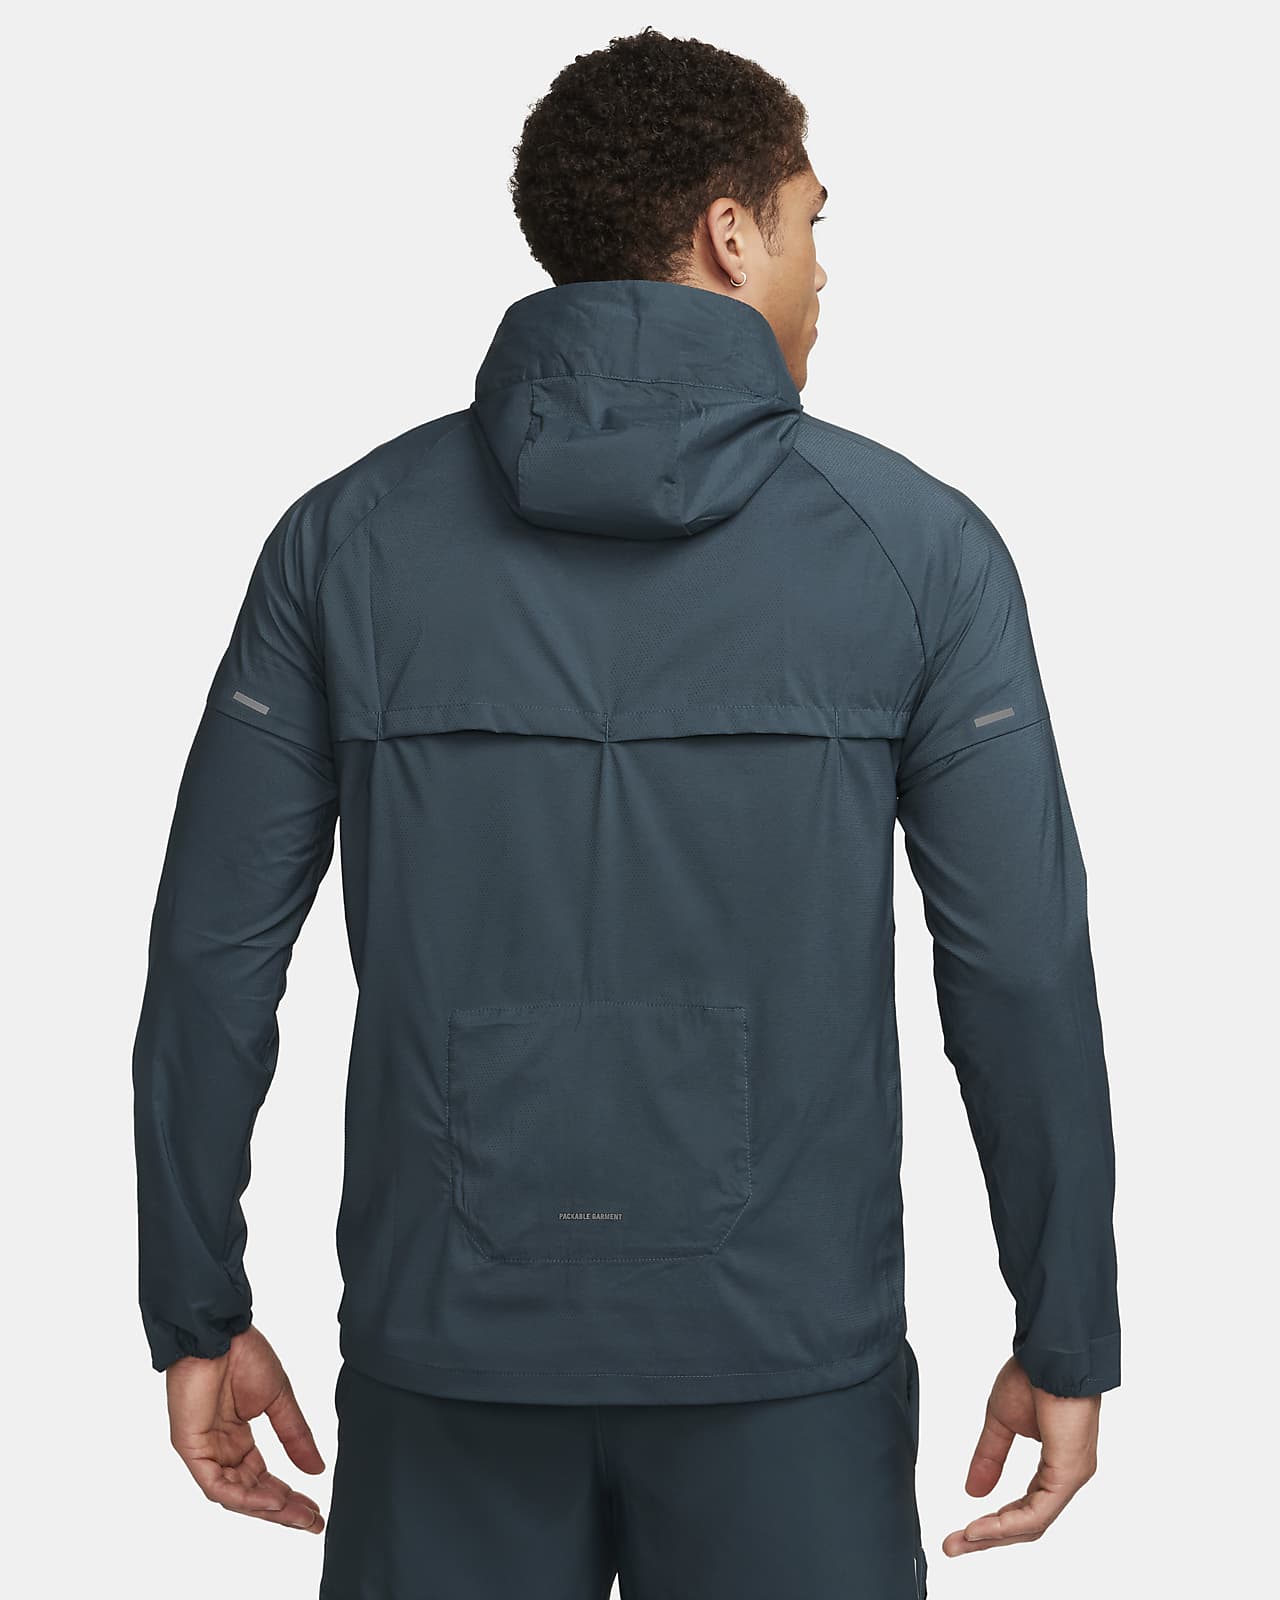 Nike Repel UV Windrunner Men\'s Protection Jacket. Running